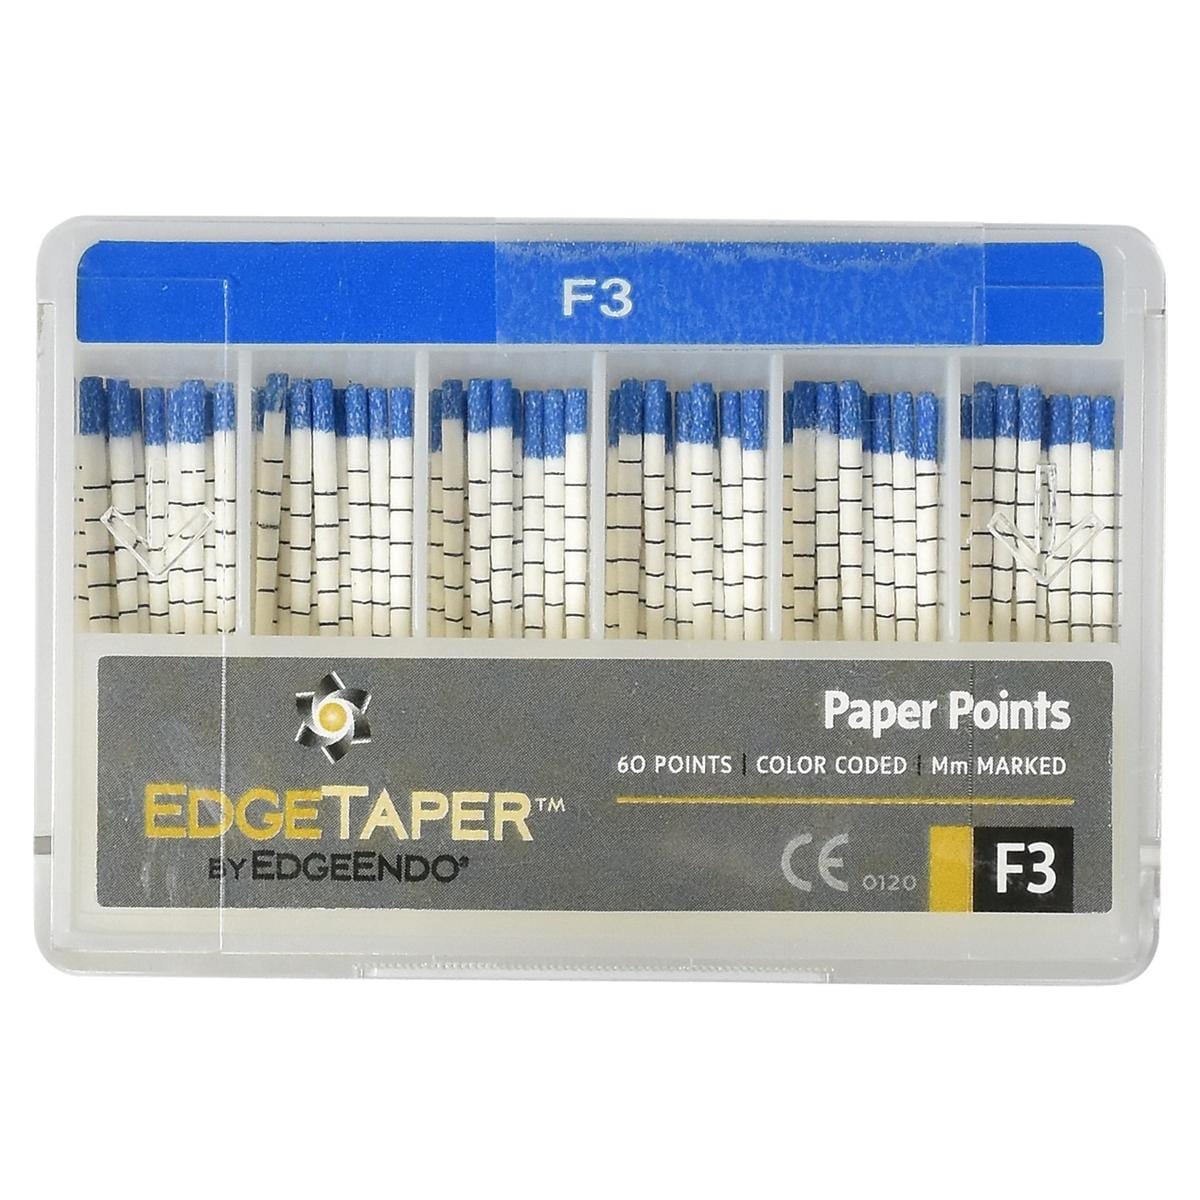 EdgeTaper? Paper Point - F3 (30)